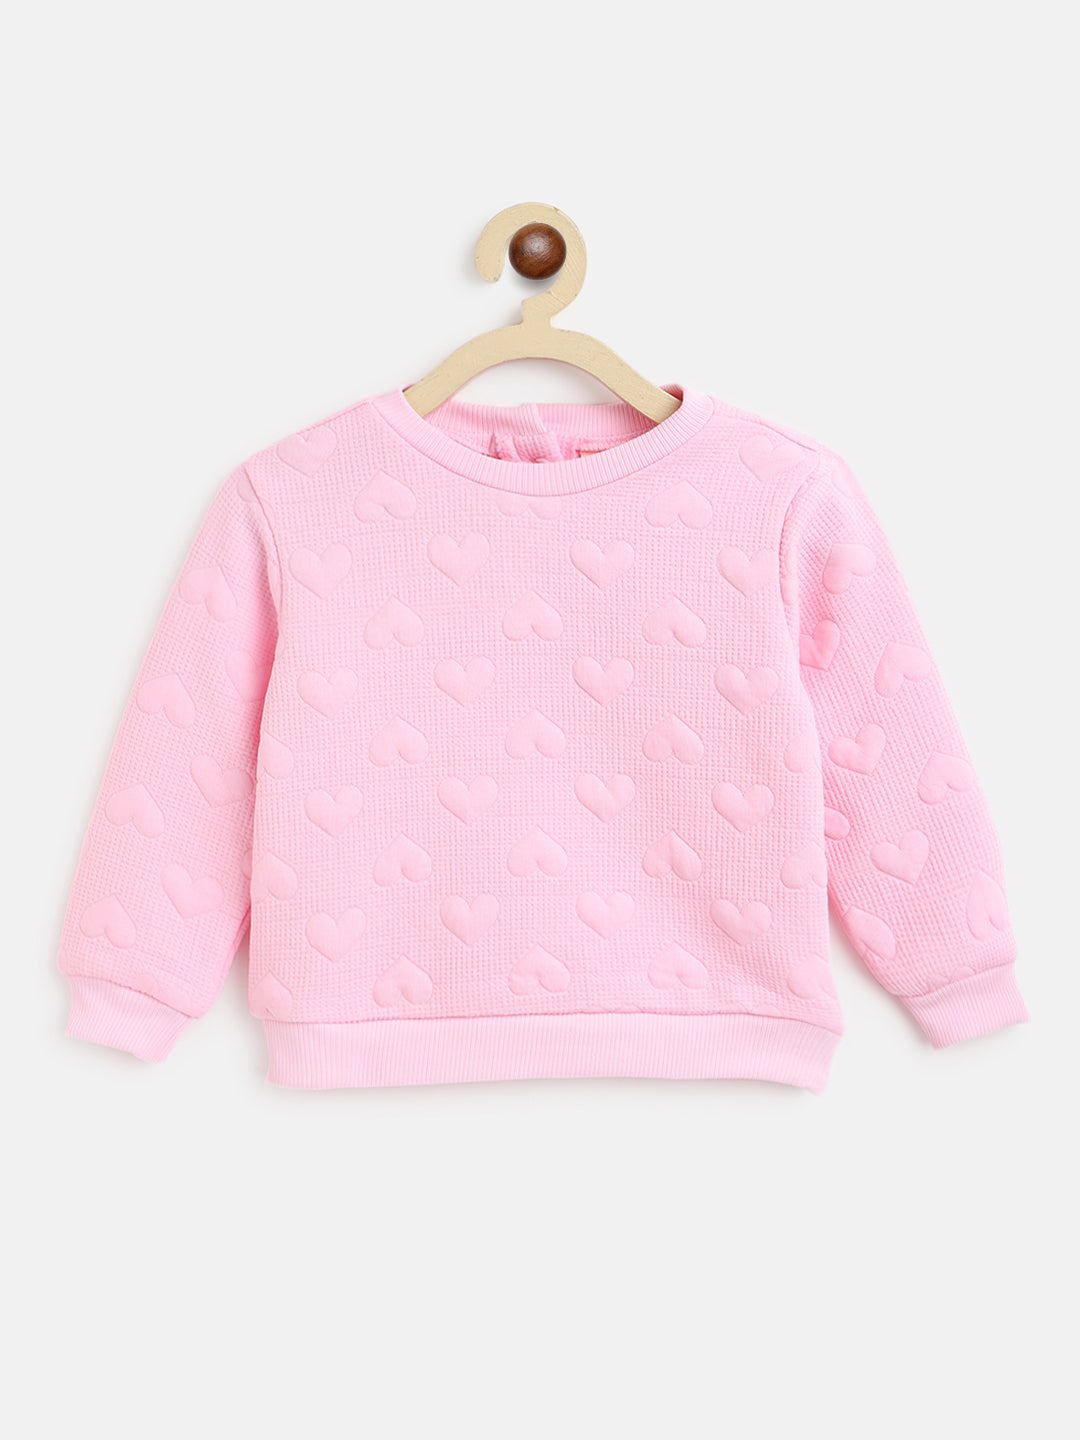 Nautinati Girls Pink Solid Sweatshirt